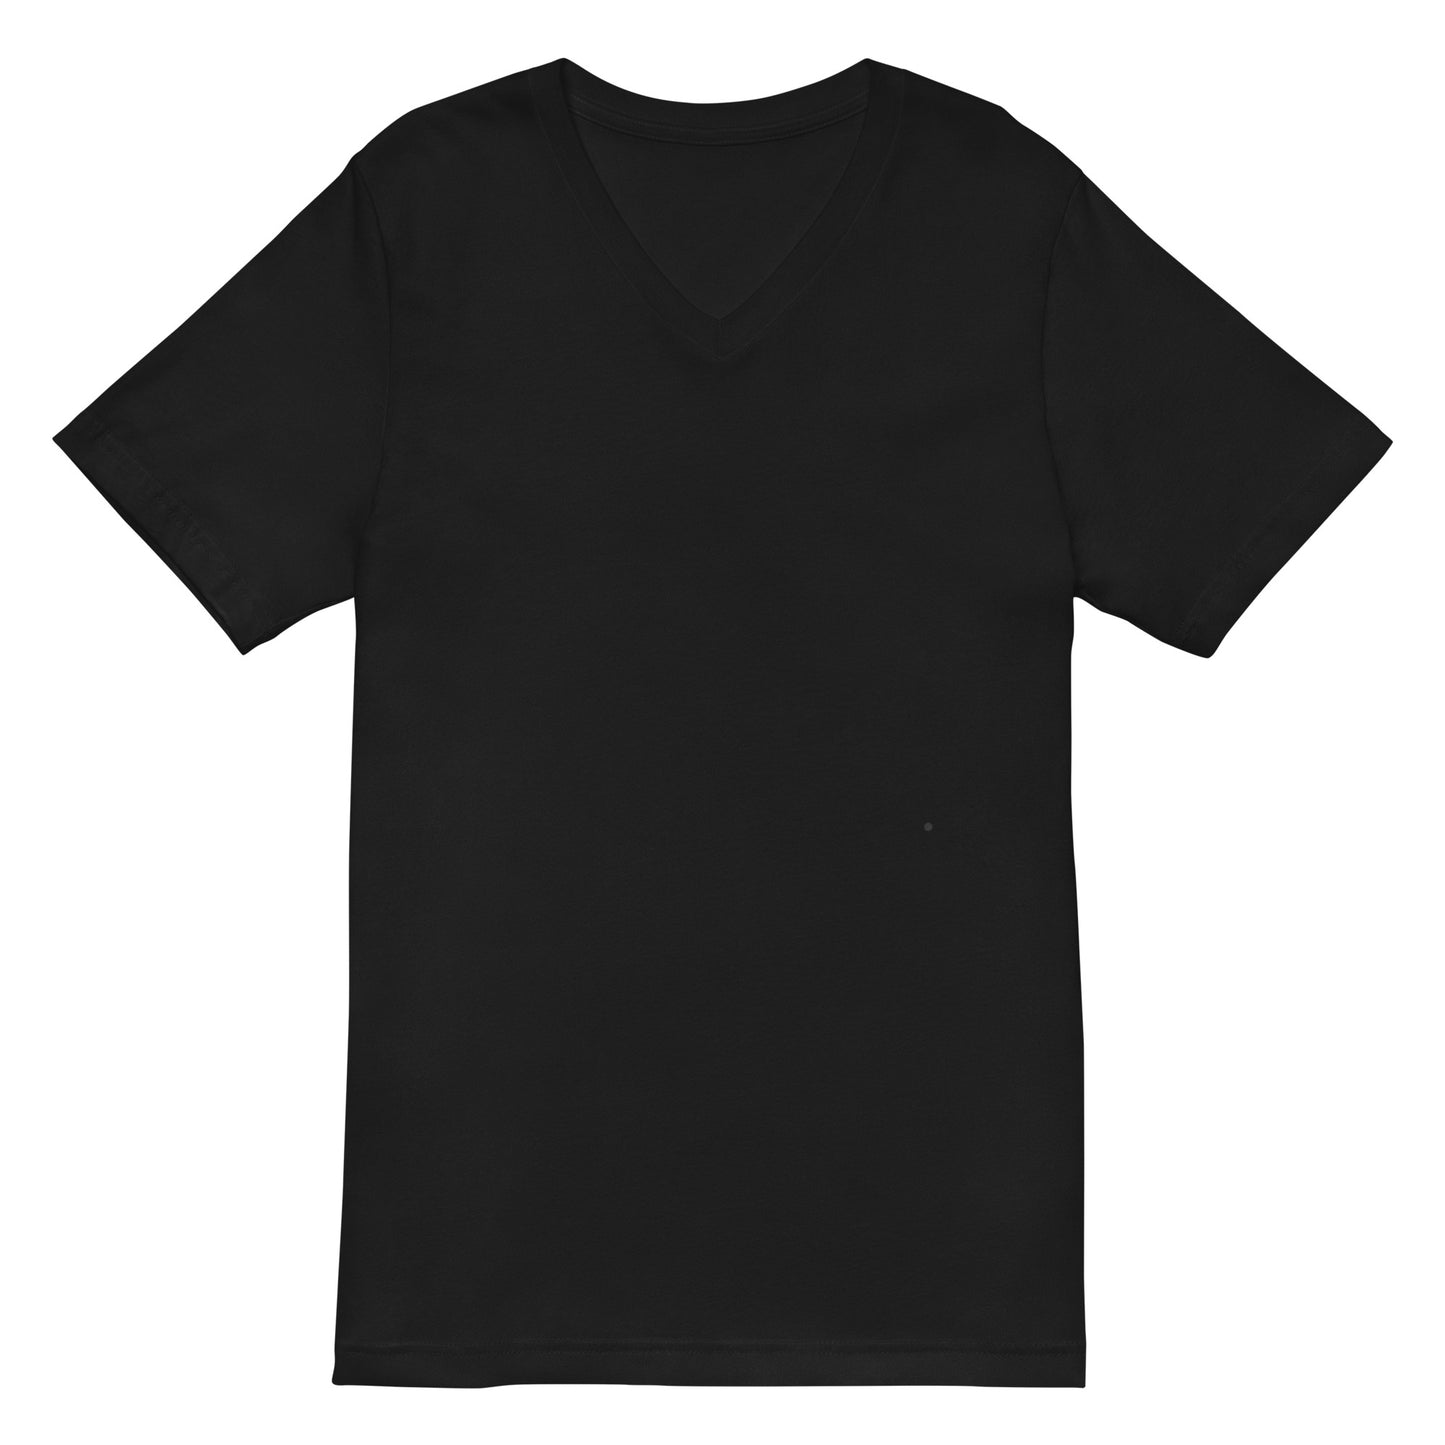 Camiseta Negra Cuello V - Elegancia y calidad en nuestra insignia. Descubre la perfección del algodón premium importado. envíos a Guatemala